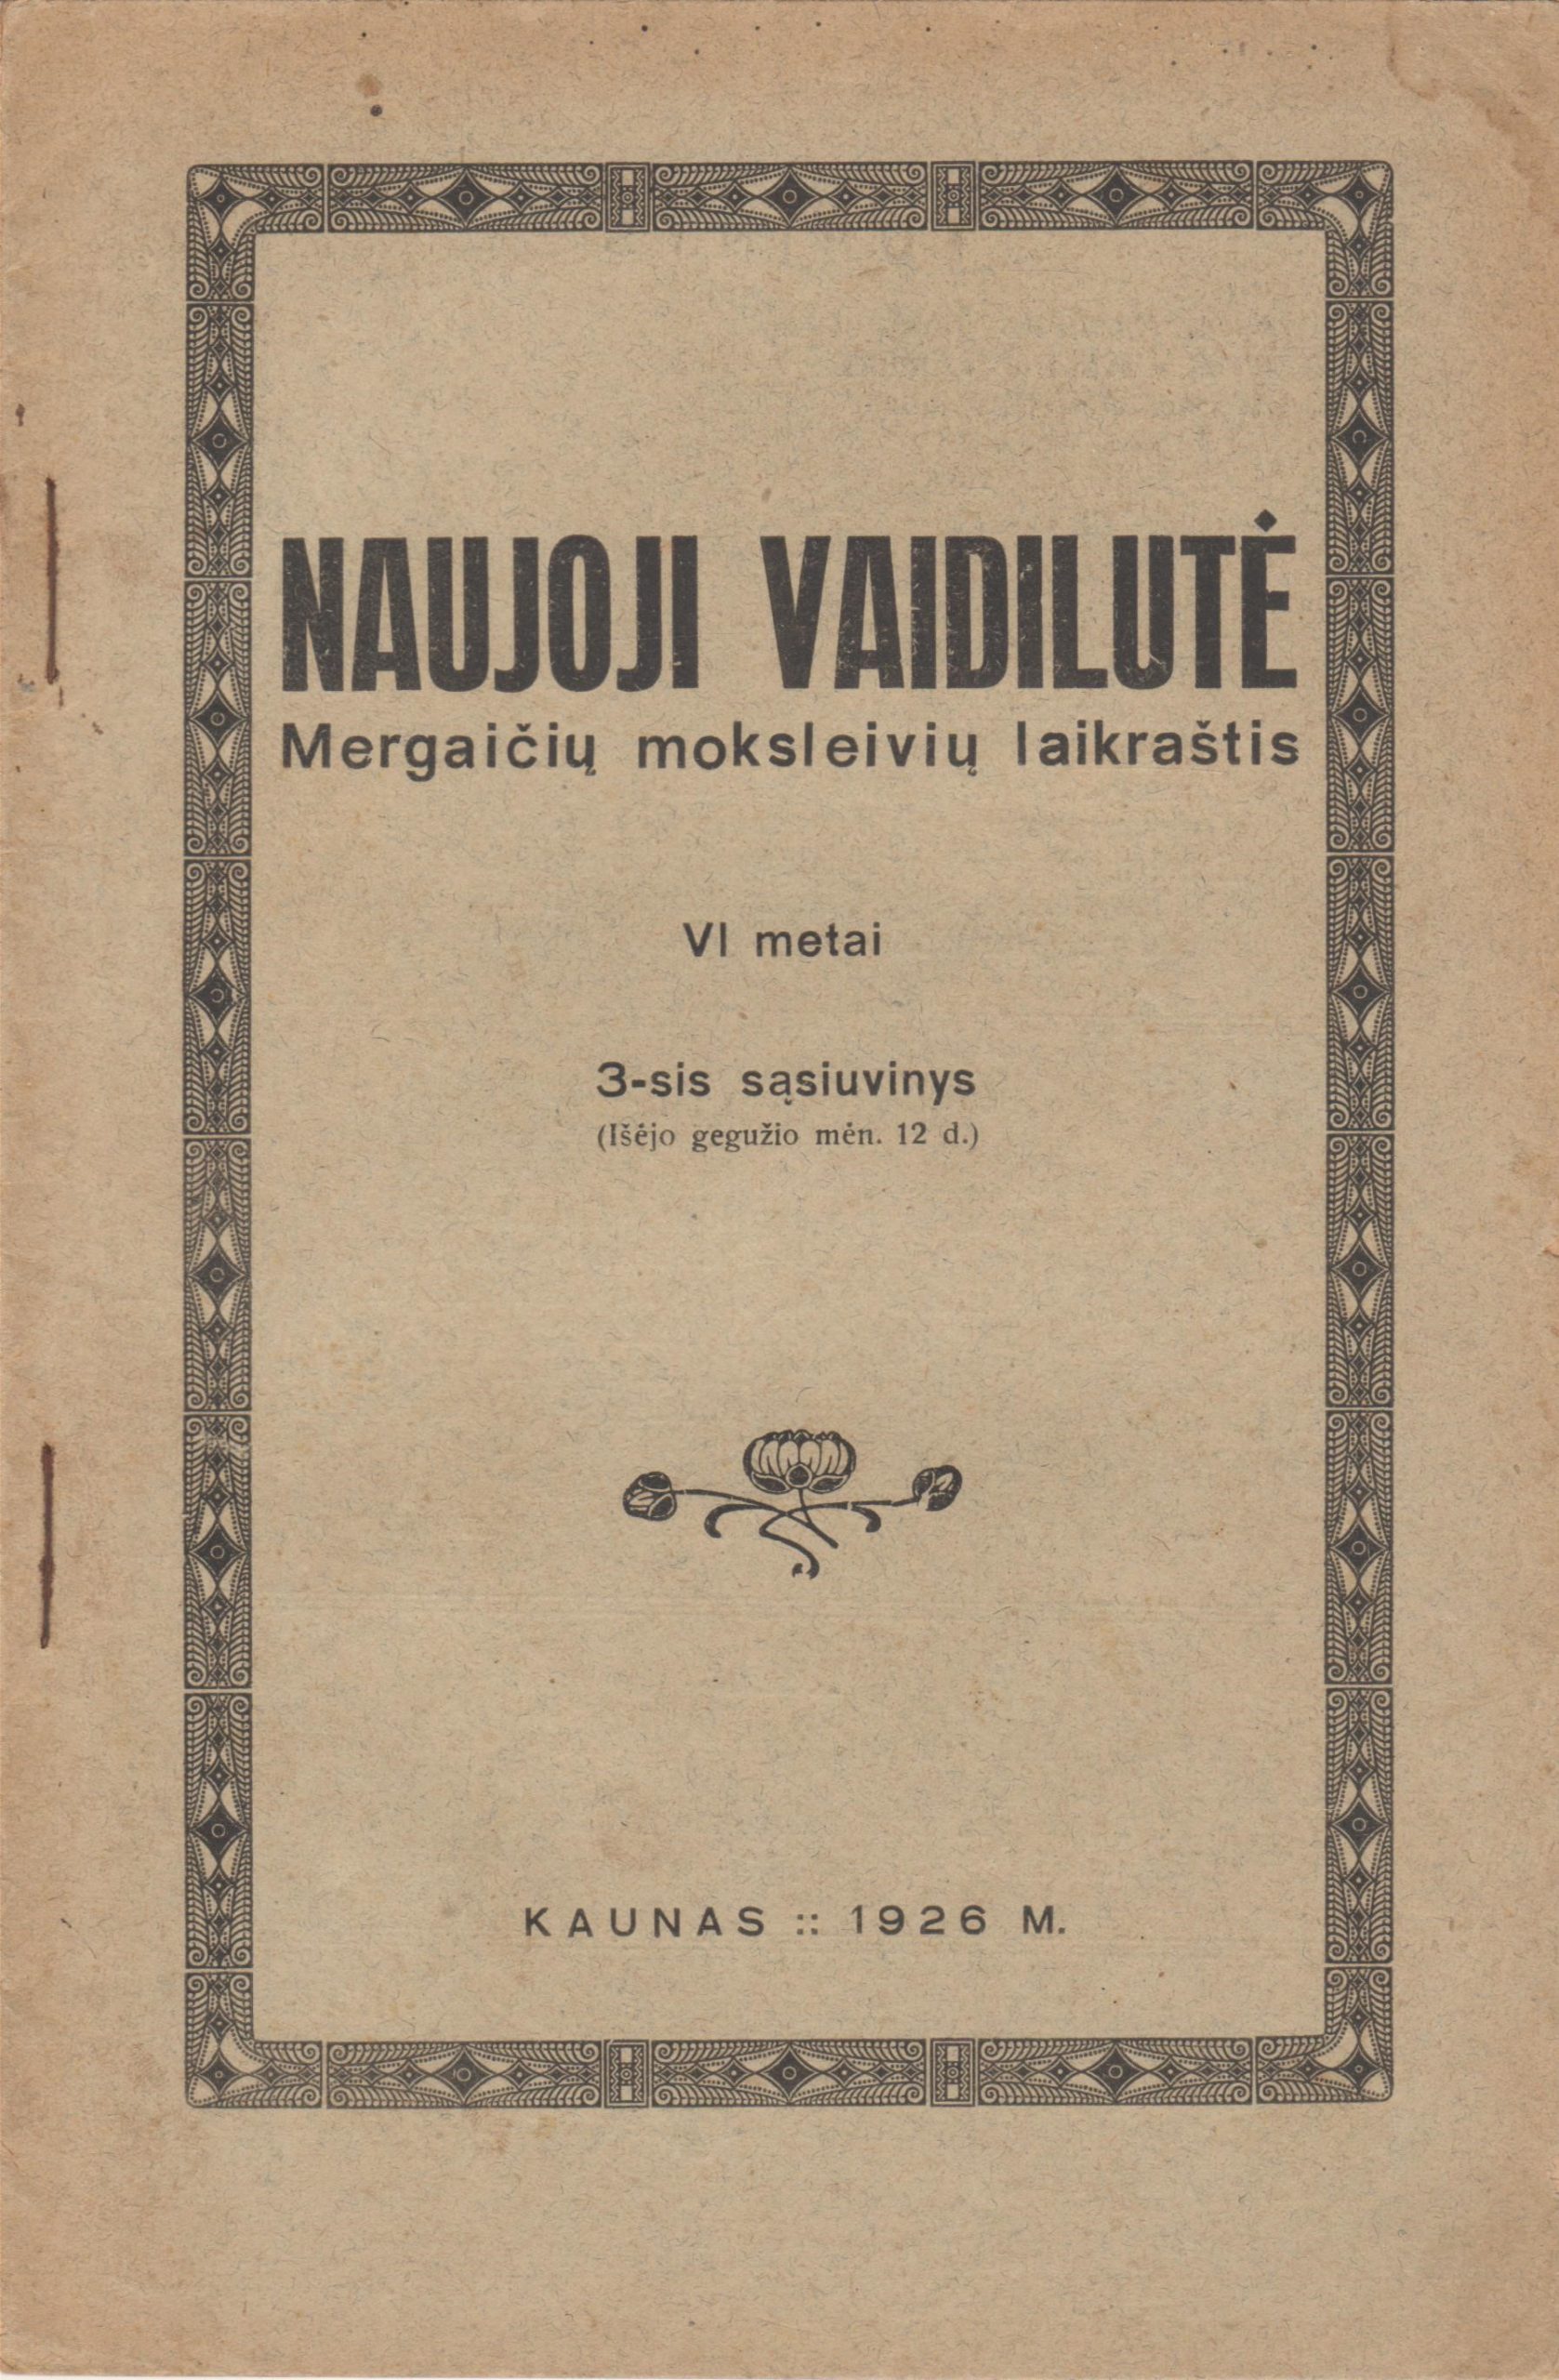 Naujoji vaidilutė. Mergaičių moksleivių laikraštis. Kaunas: 1926 m. gegužė. MLLM P12624